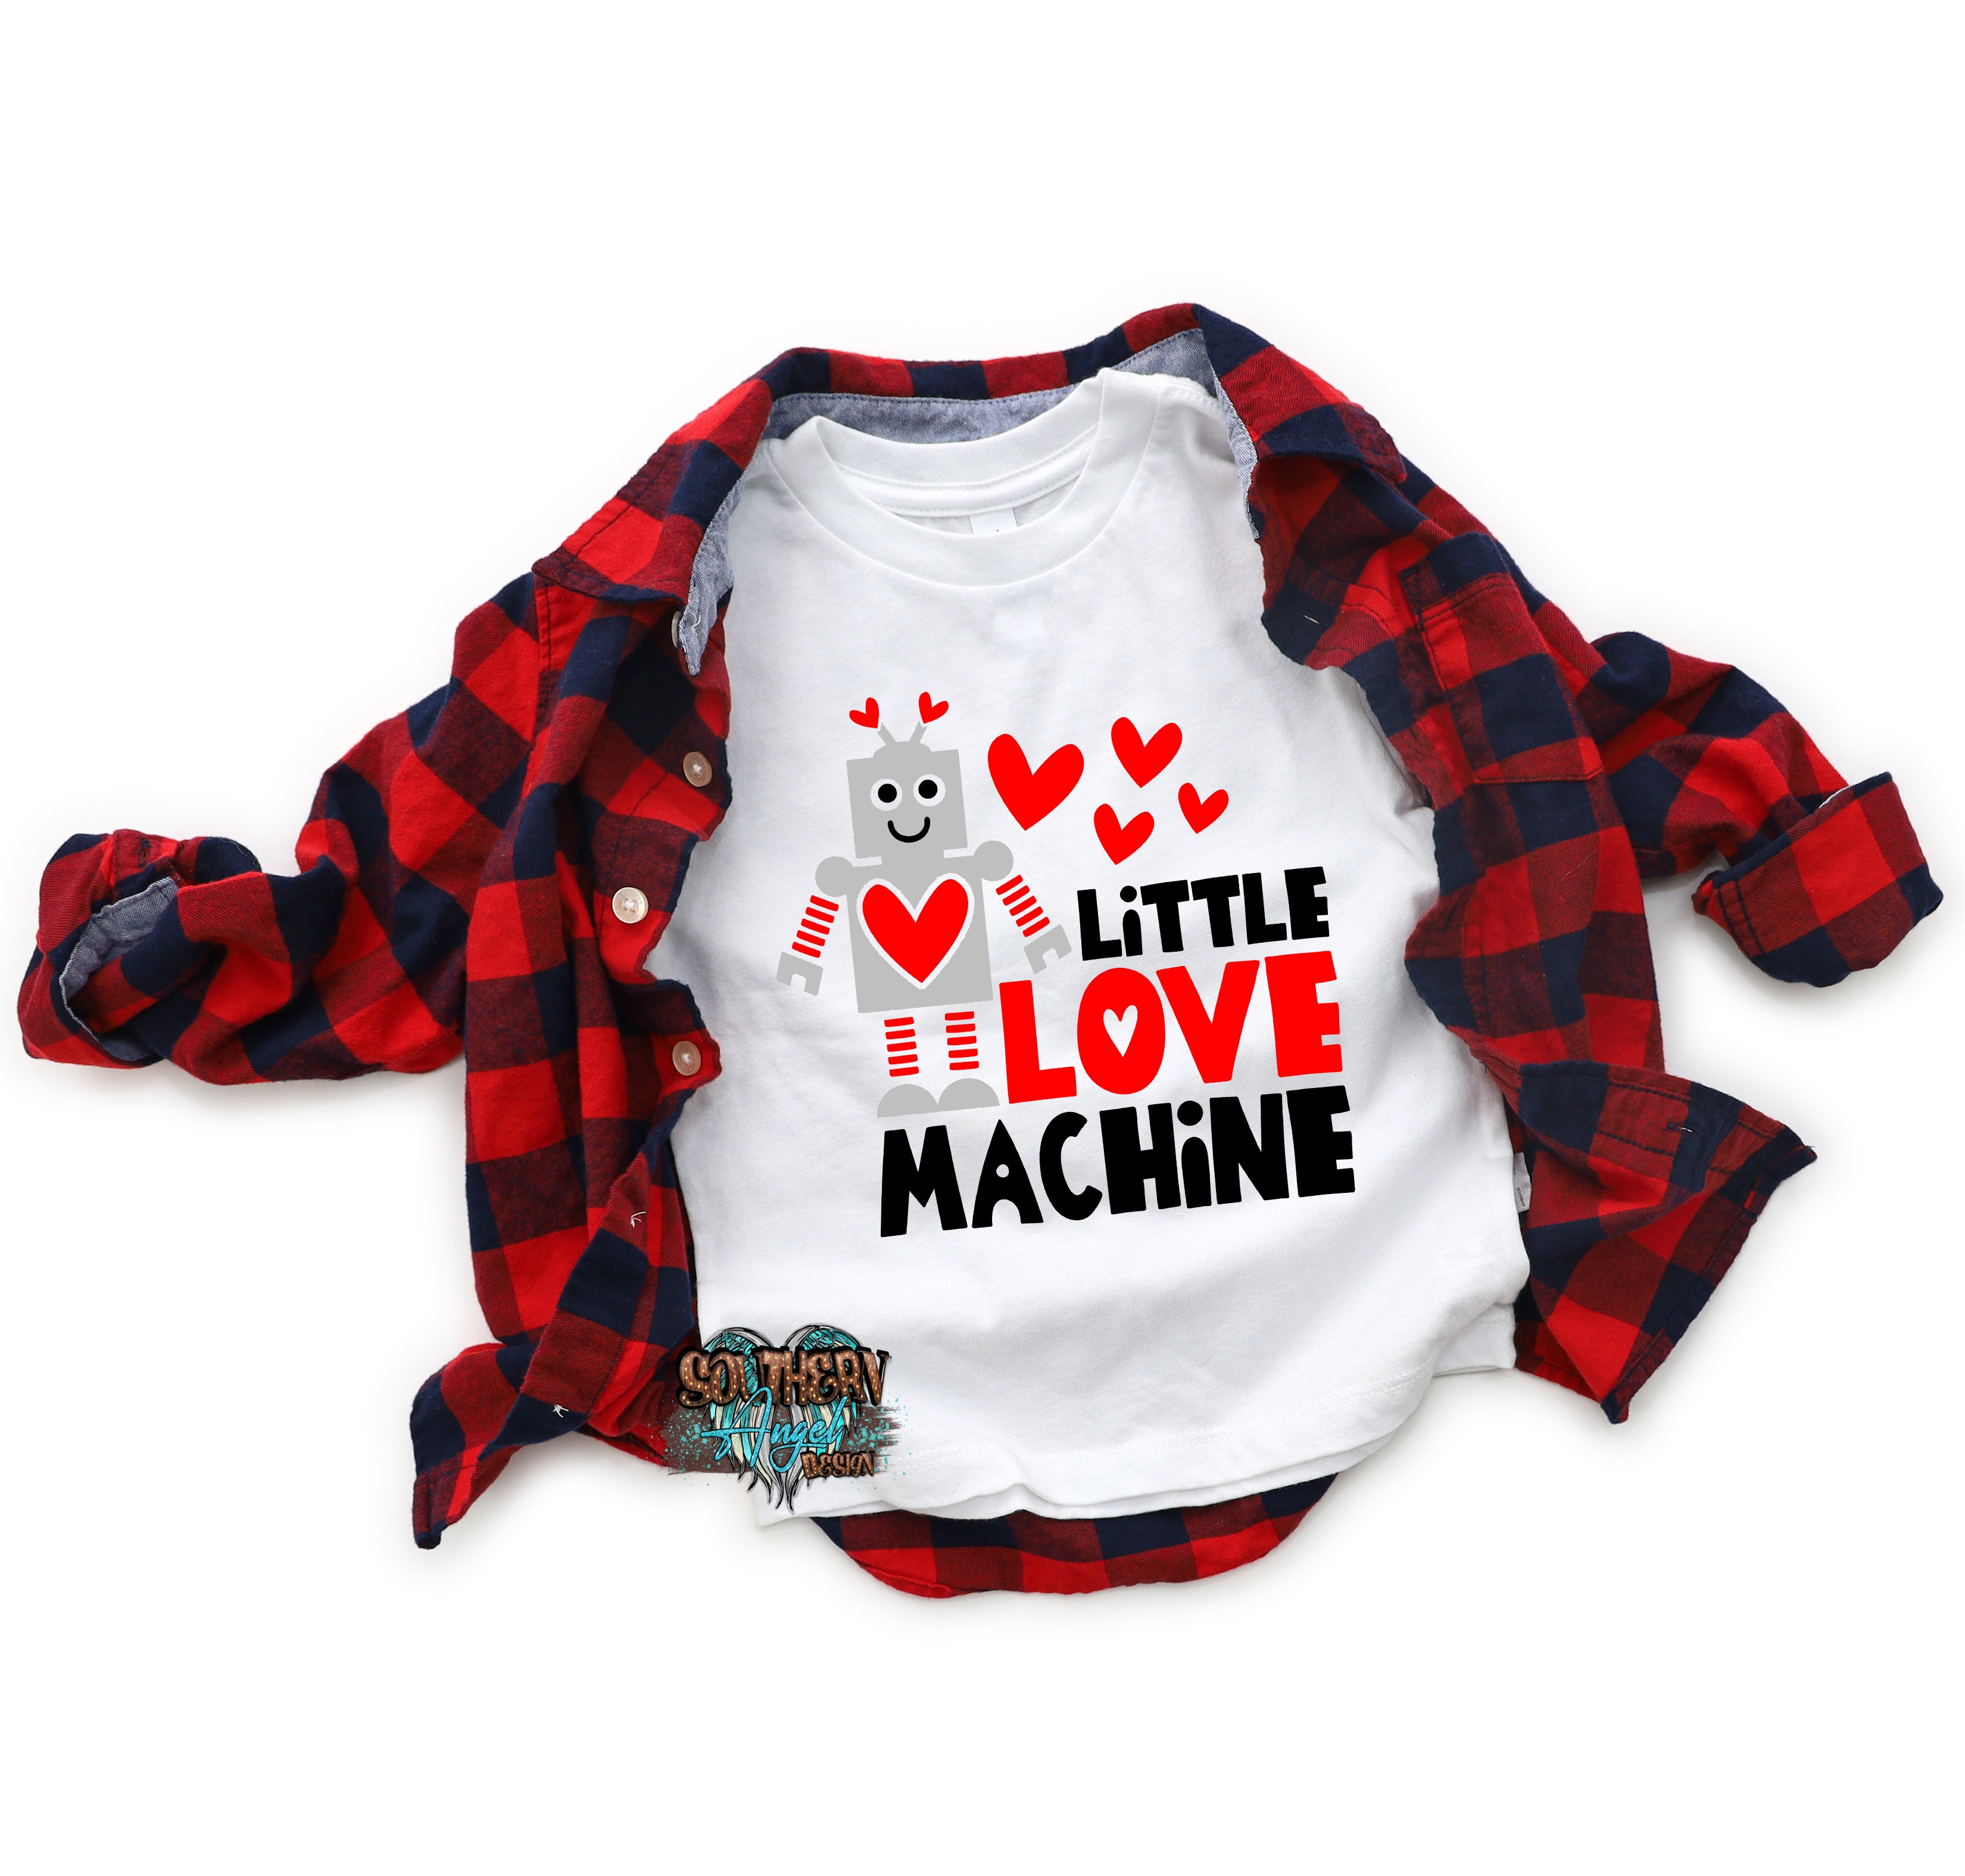 Black Little Love Machine image_78a3ca6f-7a42-4813-b69e-9b2d2ff01c68.jpg little-love-machine Kids Valentine’s Day